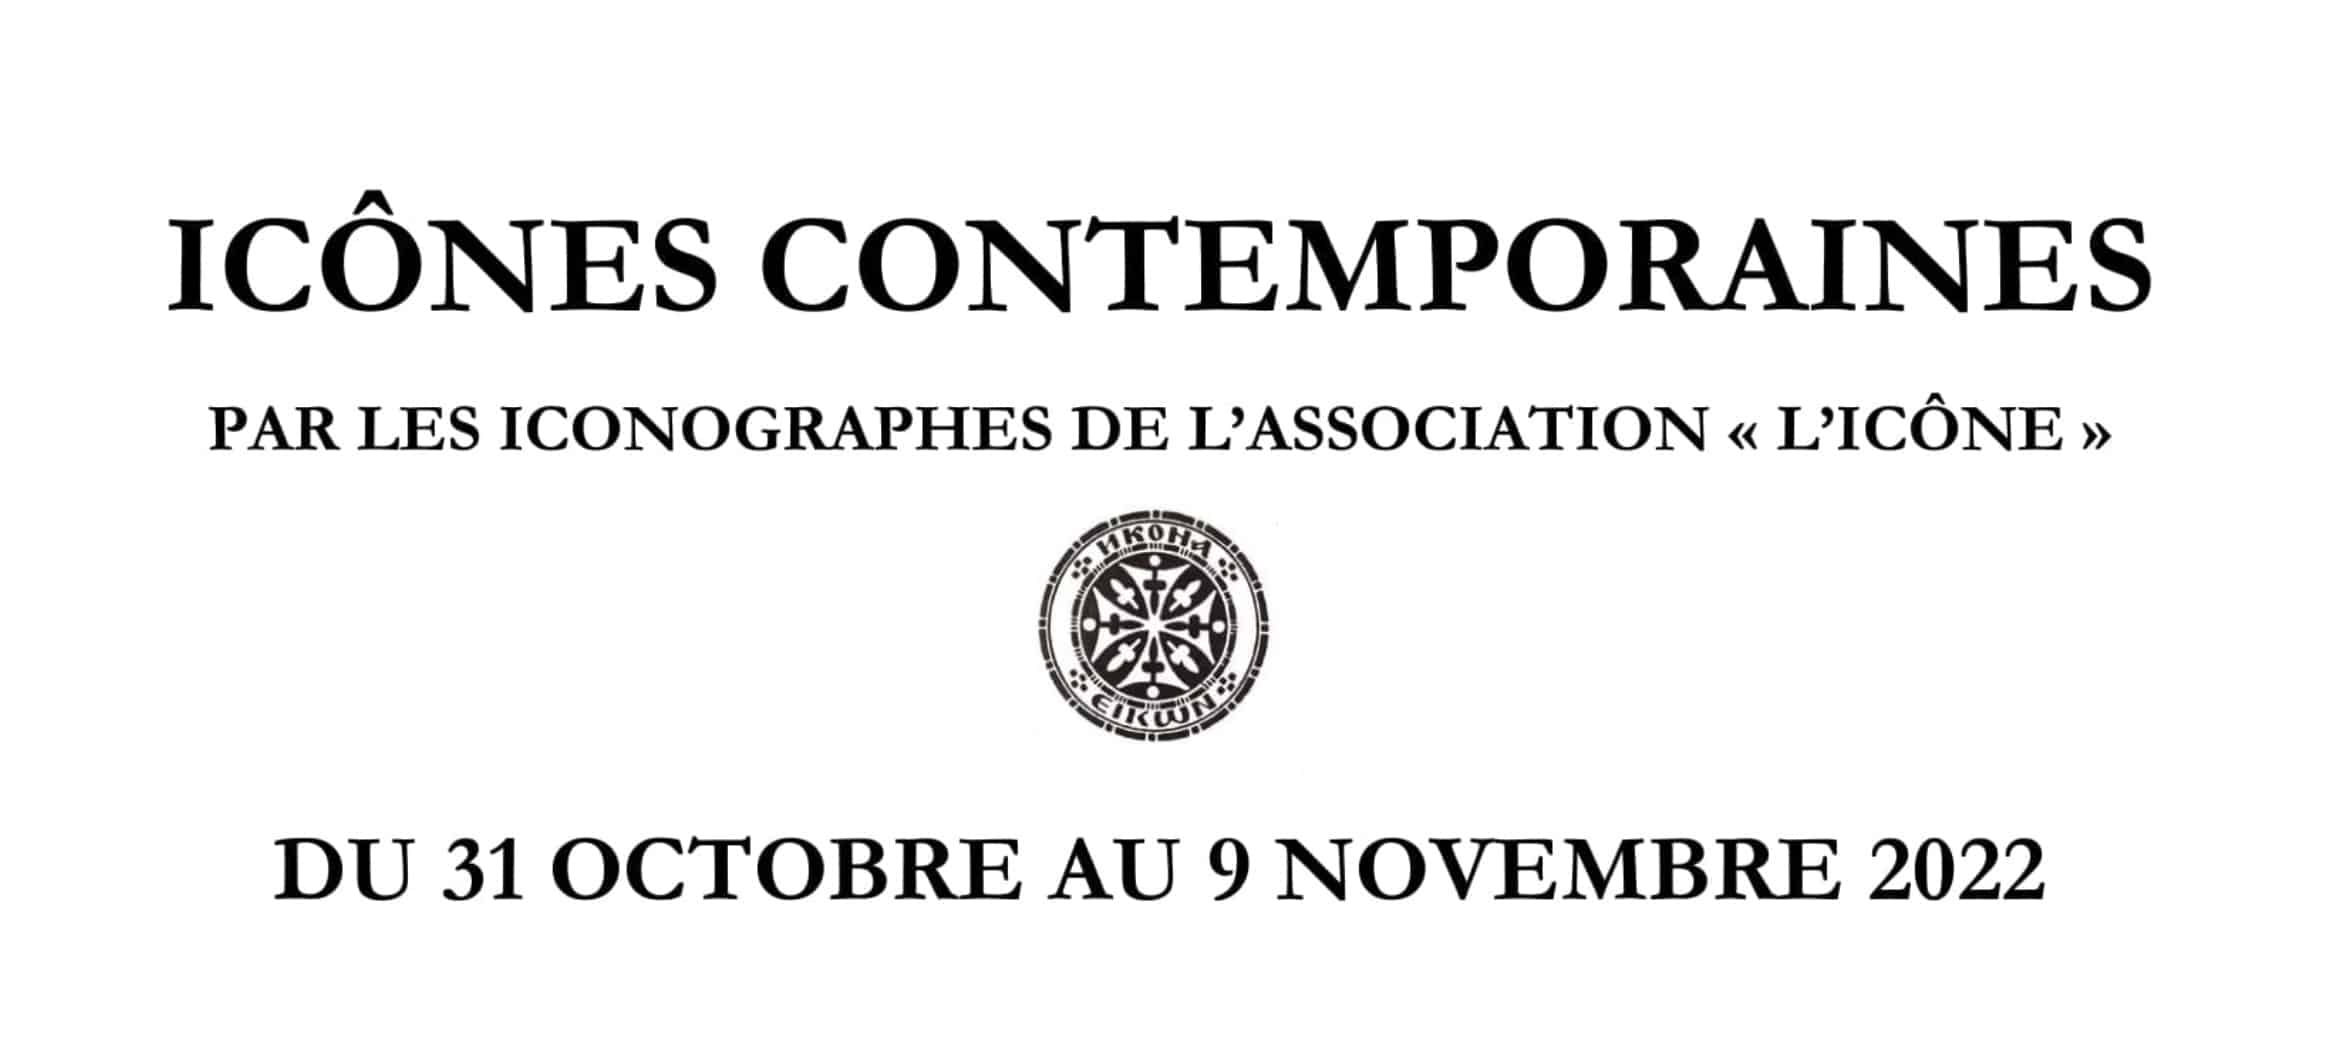 Exposition « icônes contemporaines » du 31 octobre au 9 novembre 2022 à paris